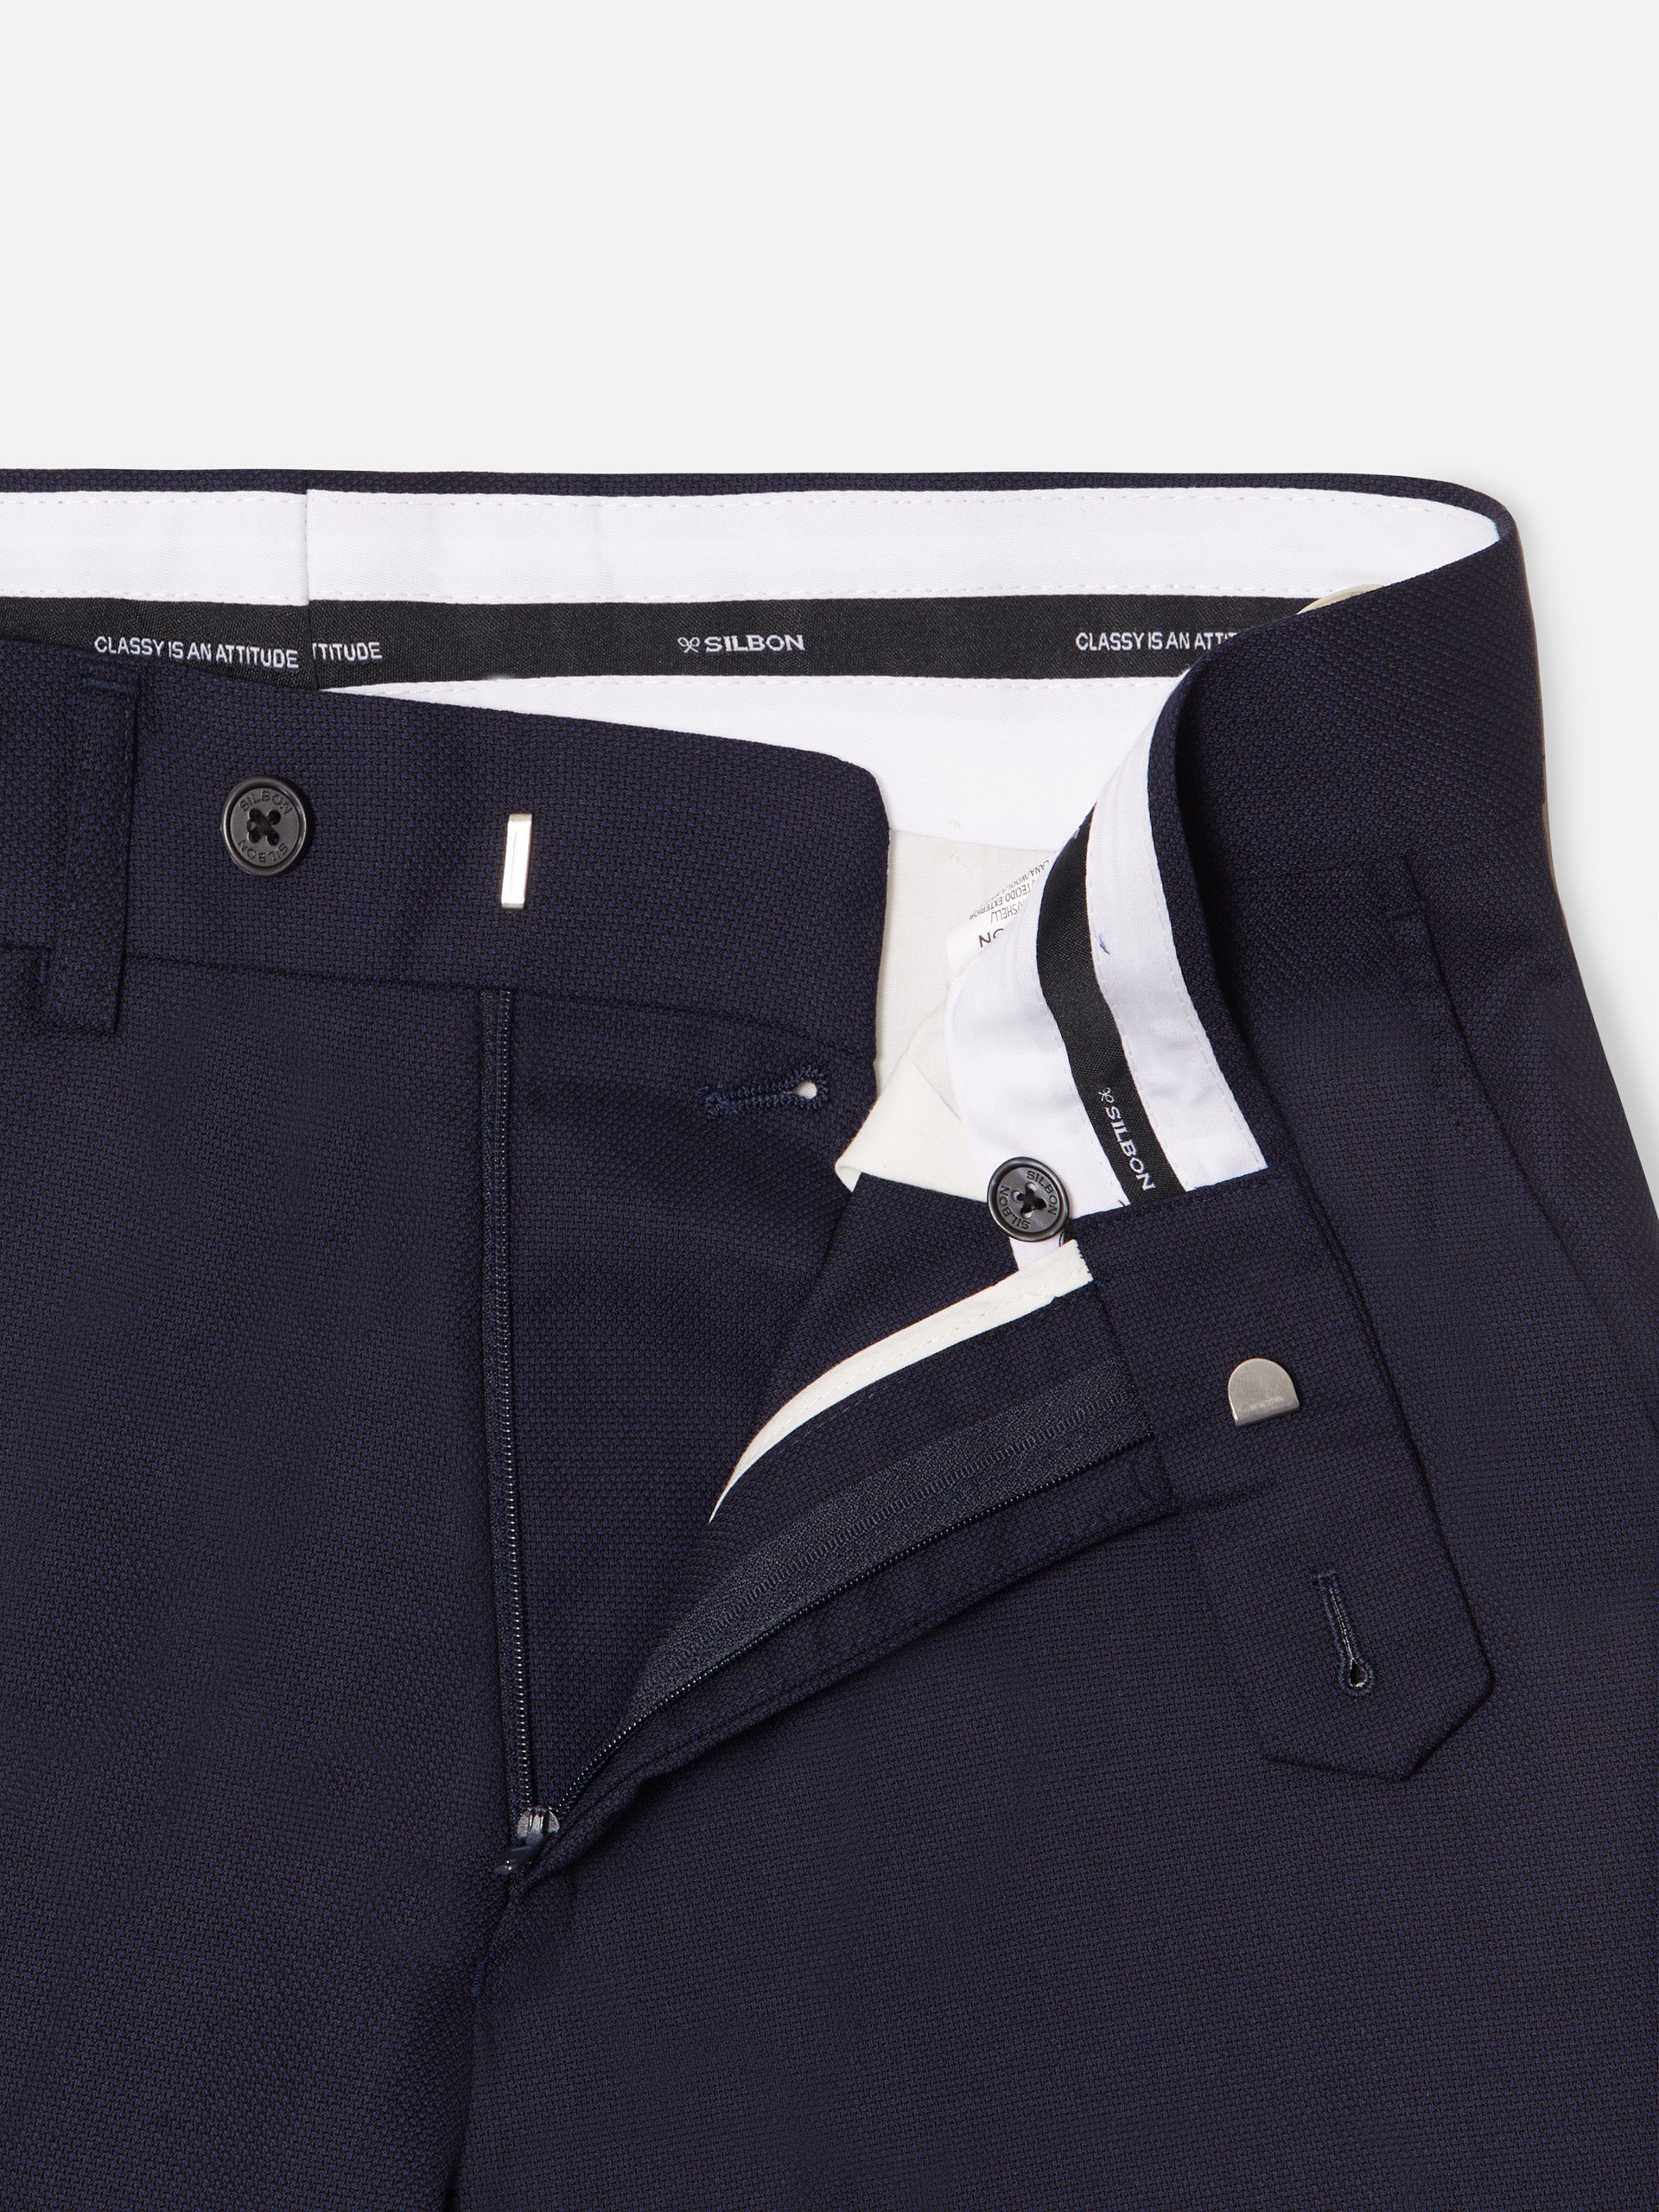 Navy blue structured suit pants